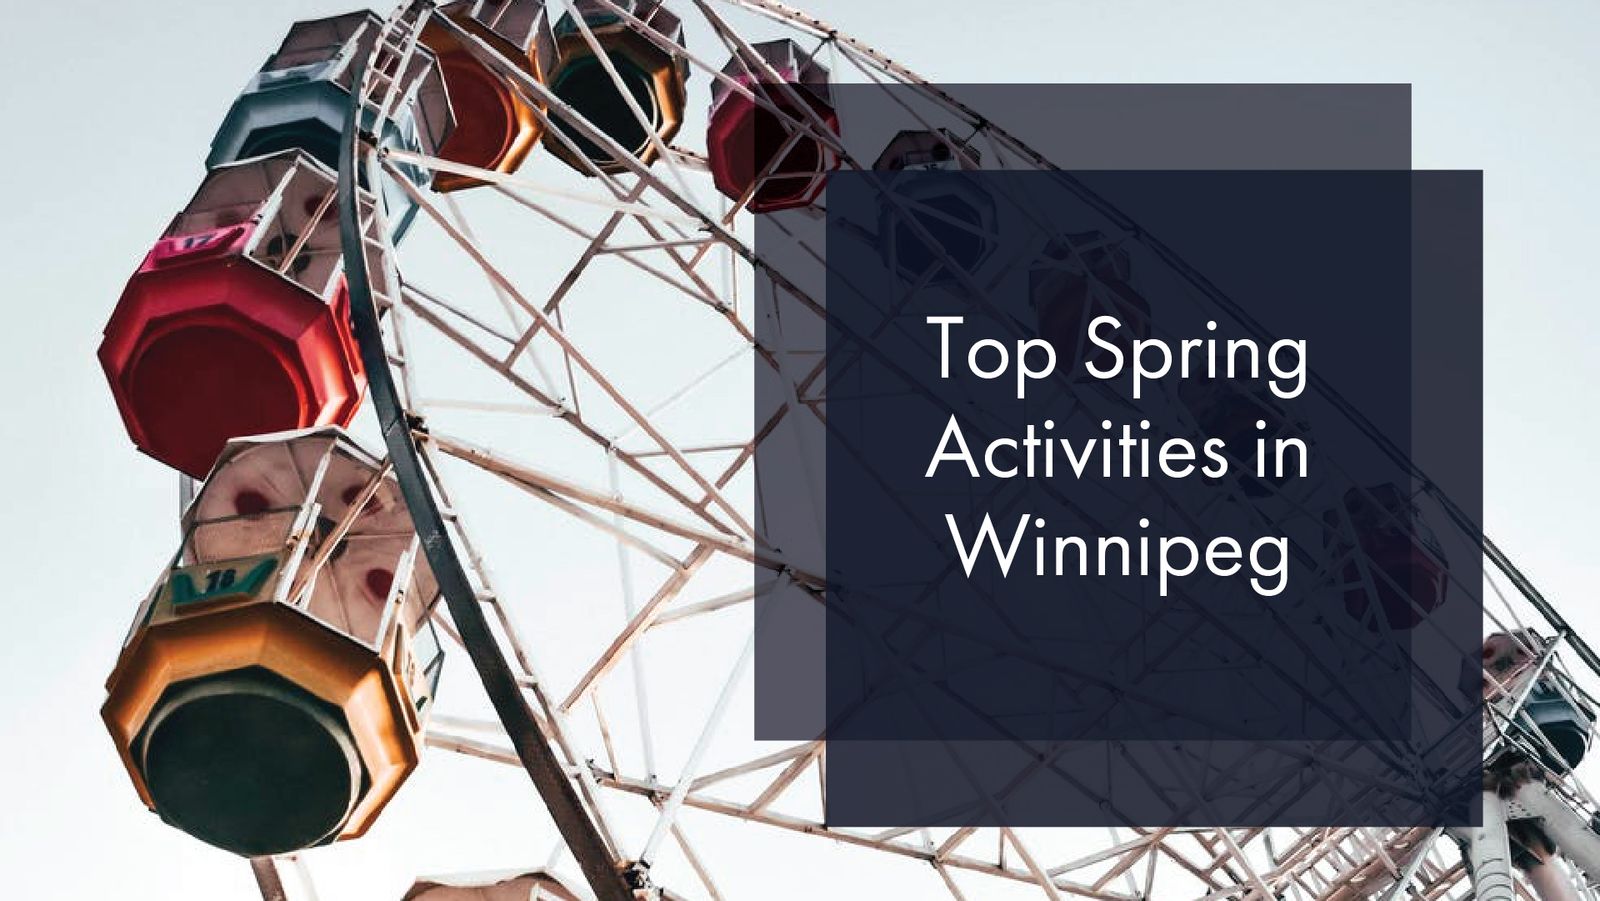 Top Spring Activities in Winnipeg